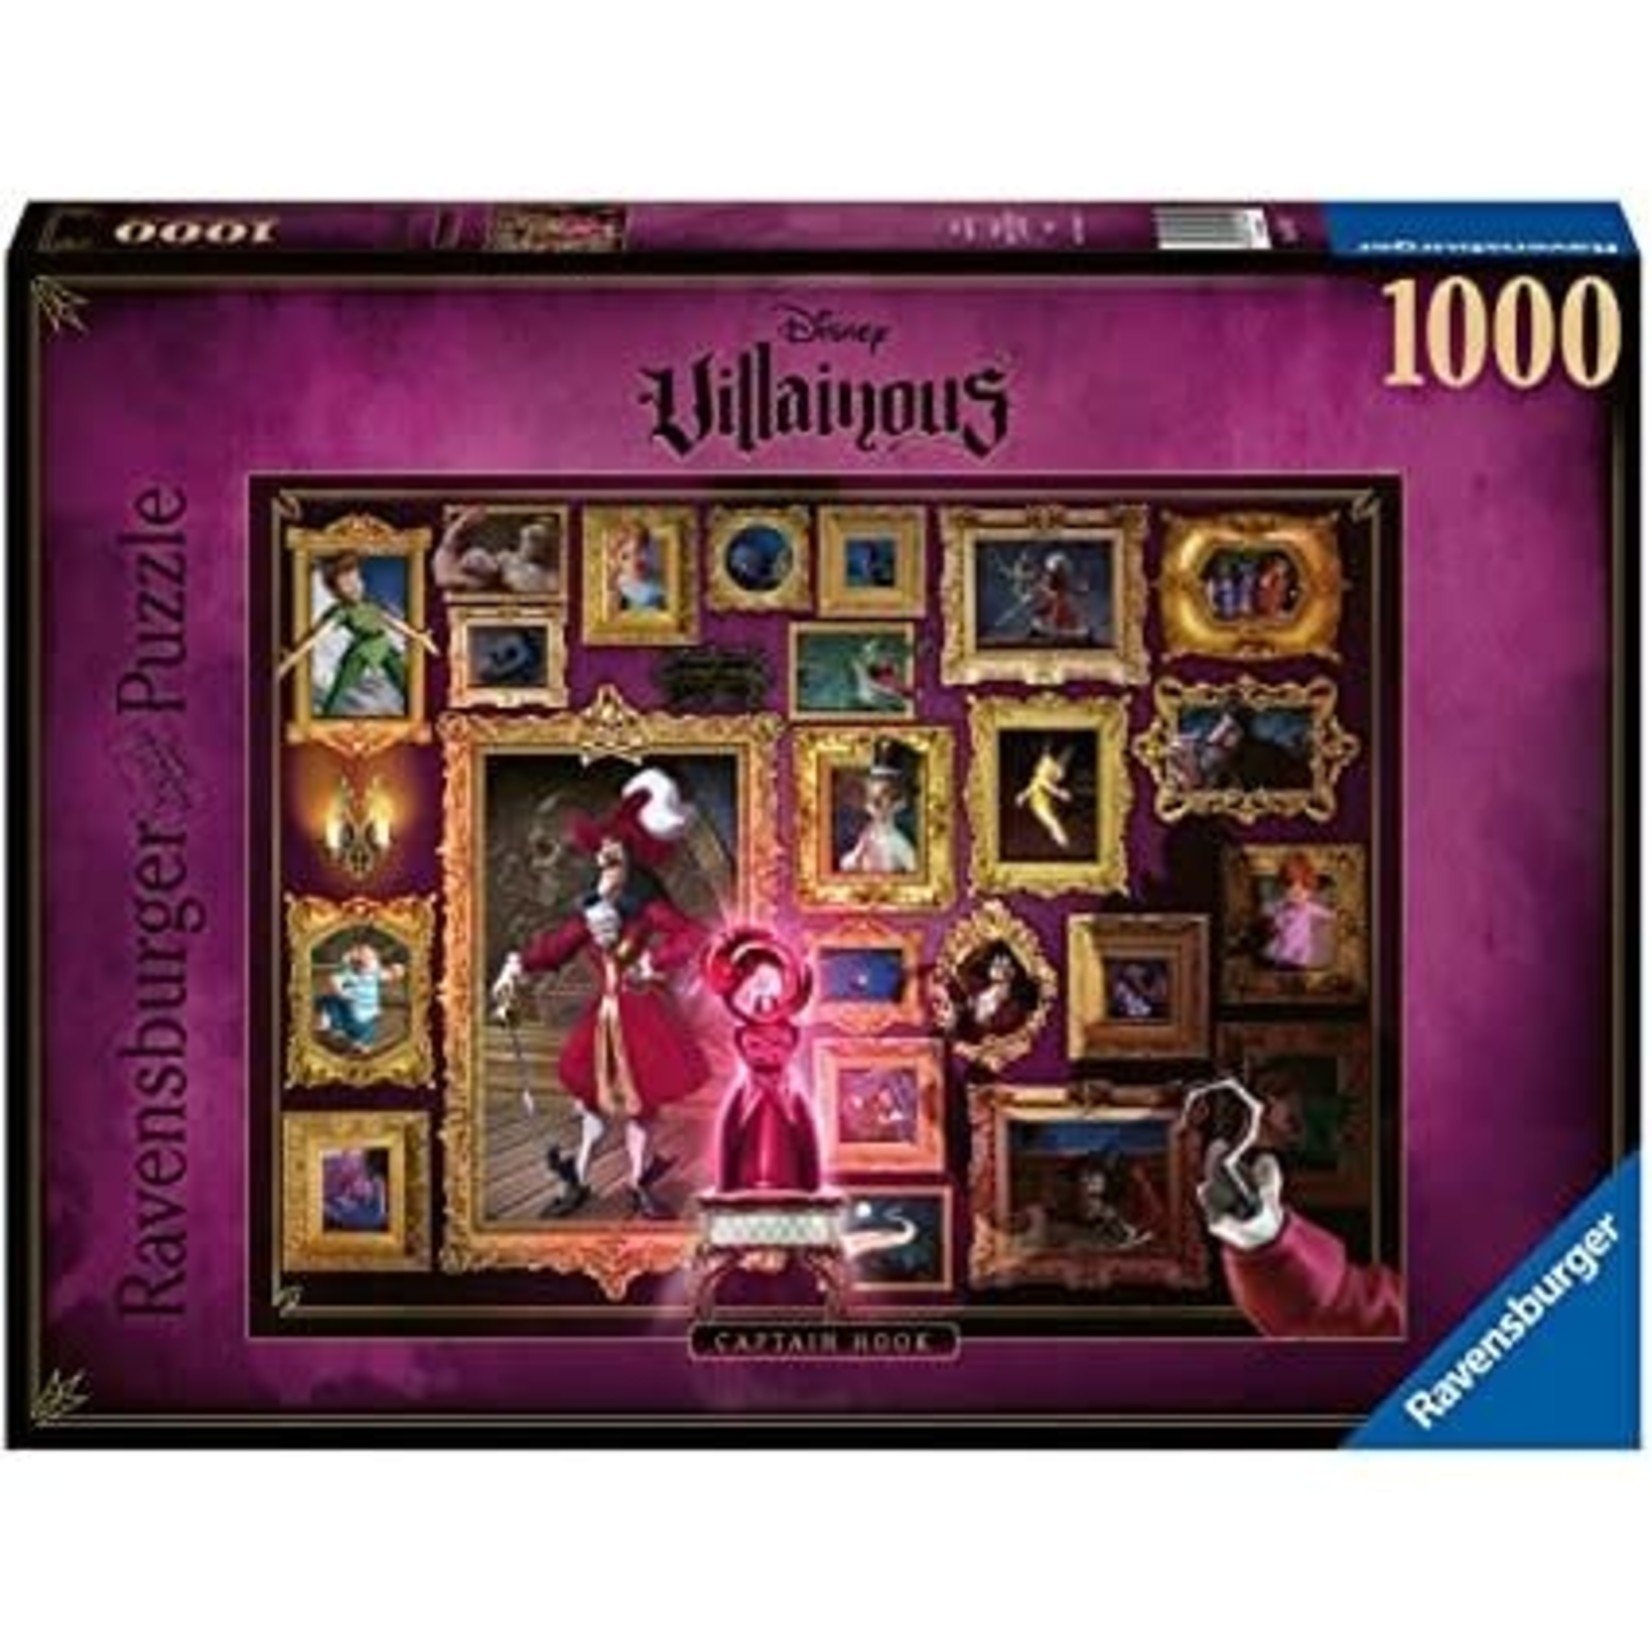 Ravensburger 1000 pc Puzzle Disney Villainous Captain Hook